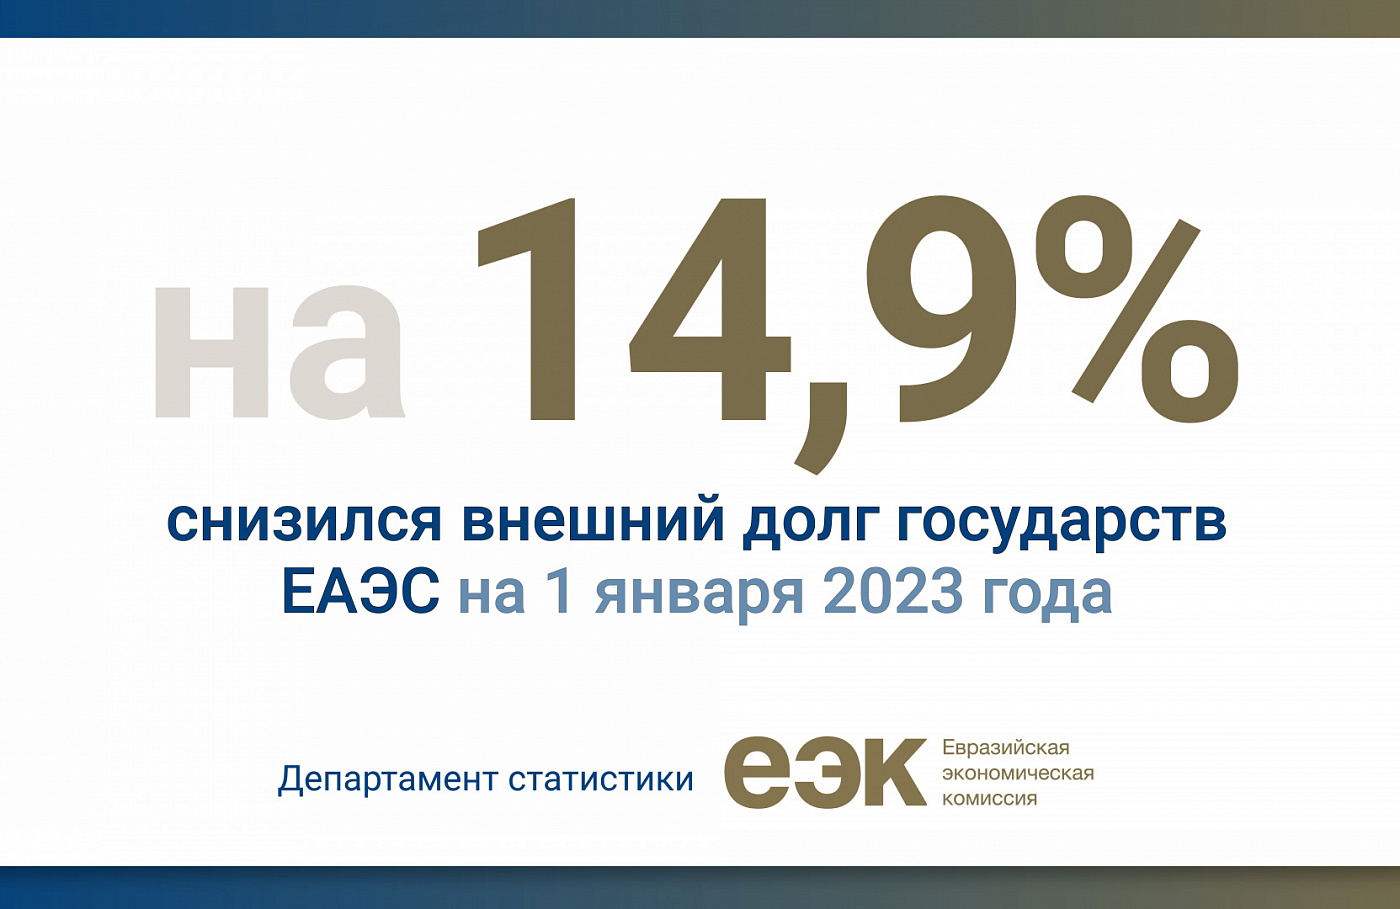 Внешний долг государств ЕАЭС снизился на 14,9% на 1 января 2023 года